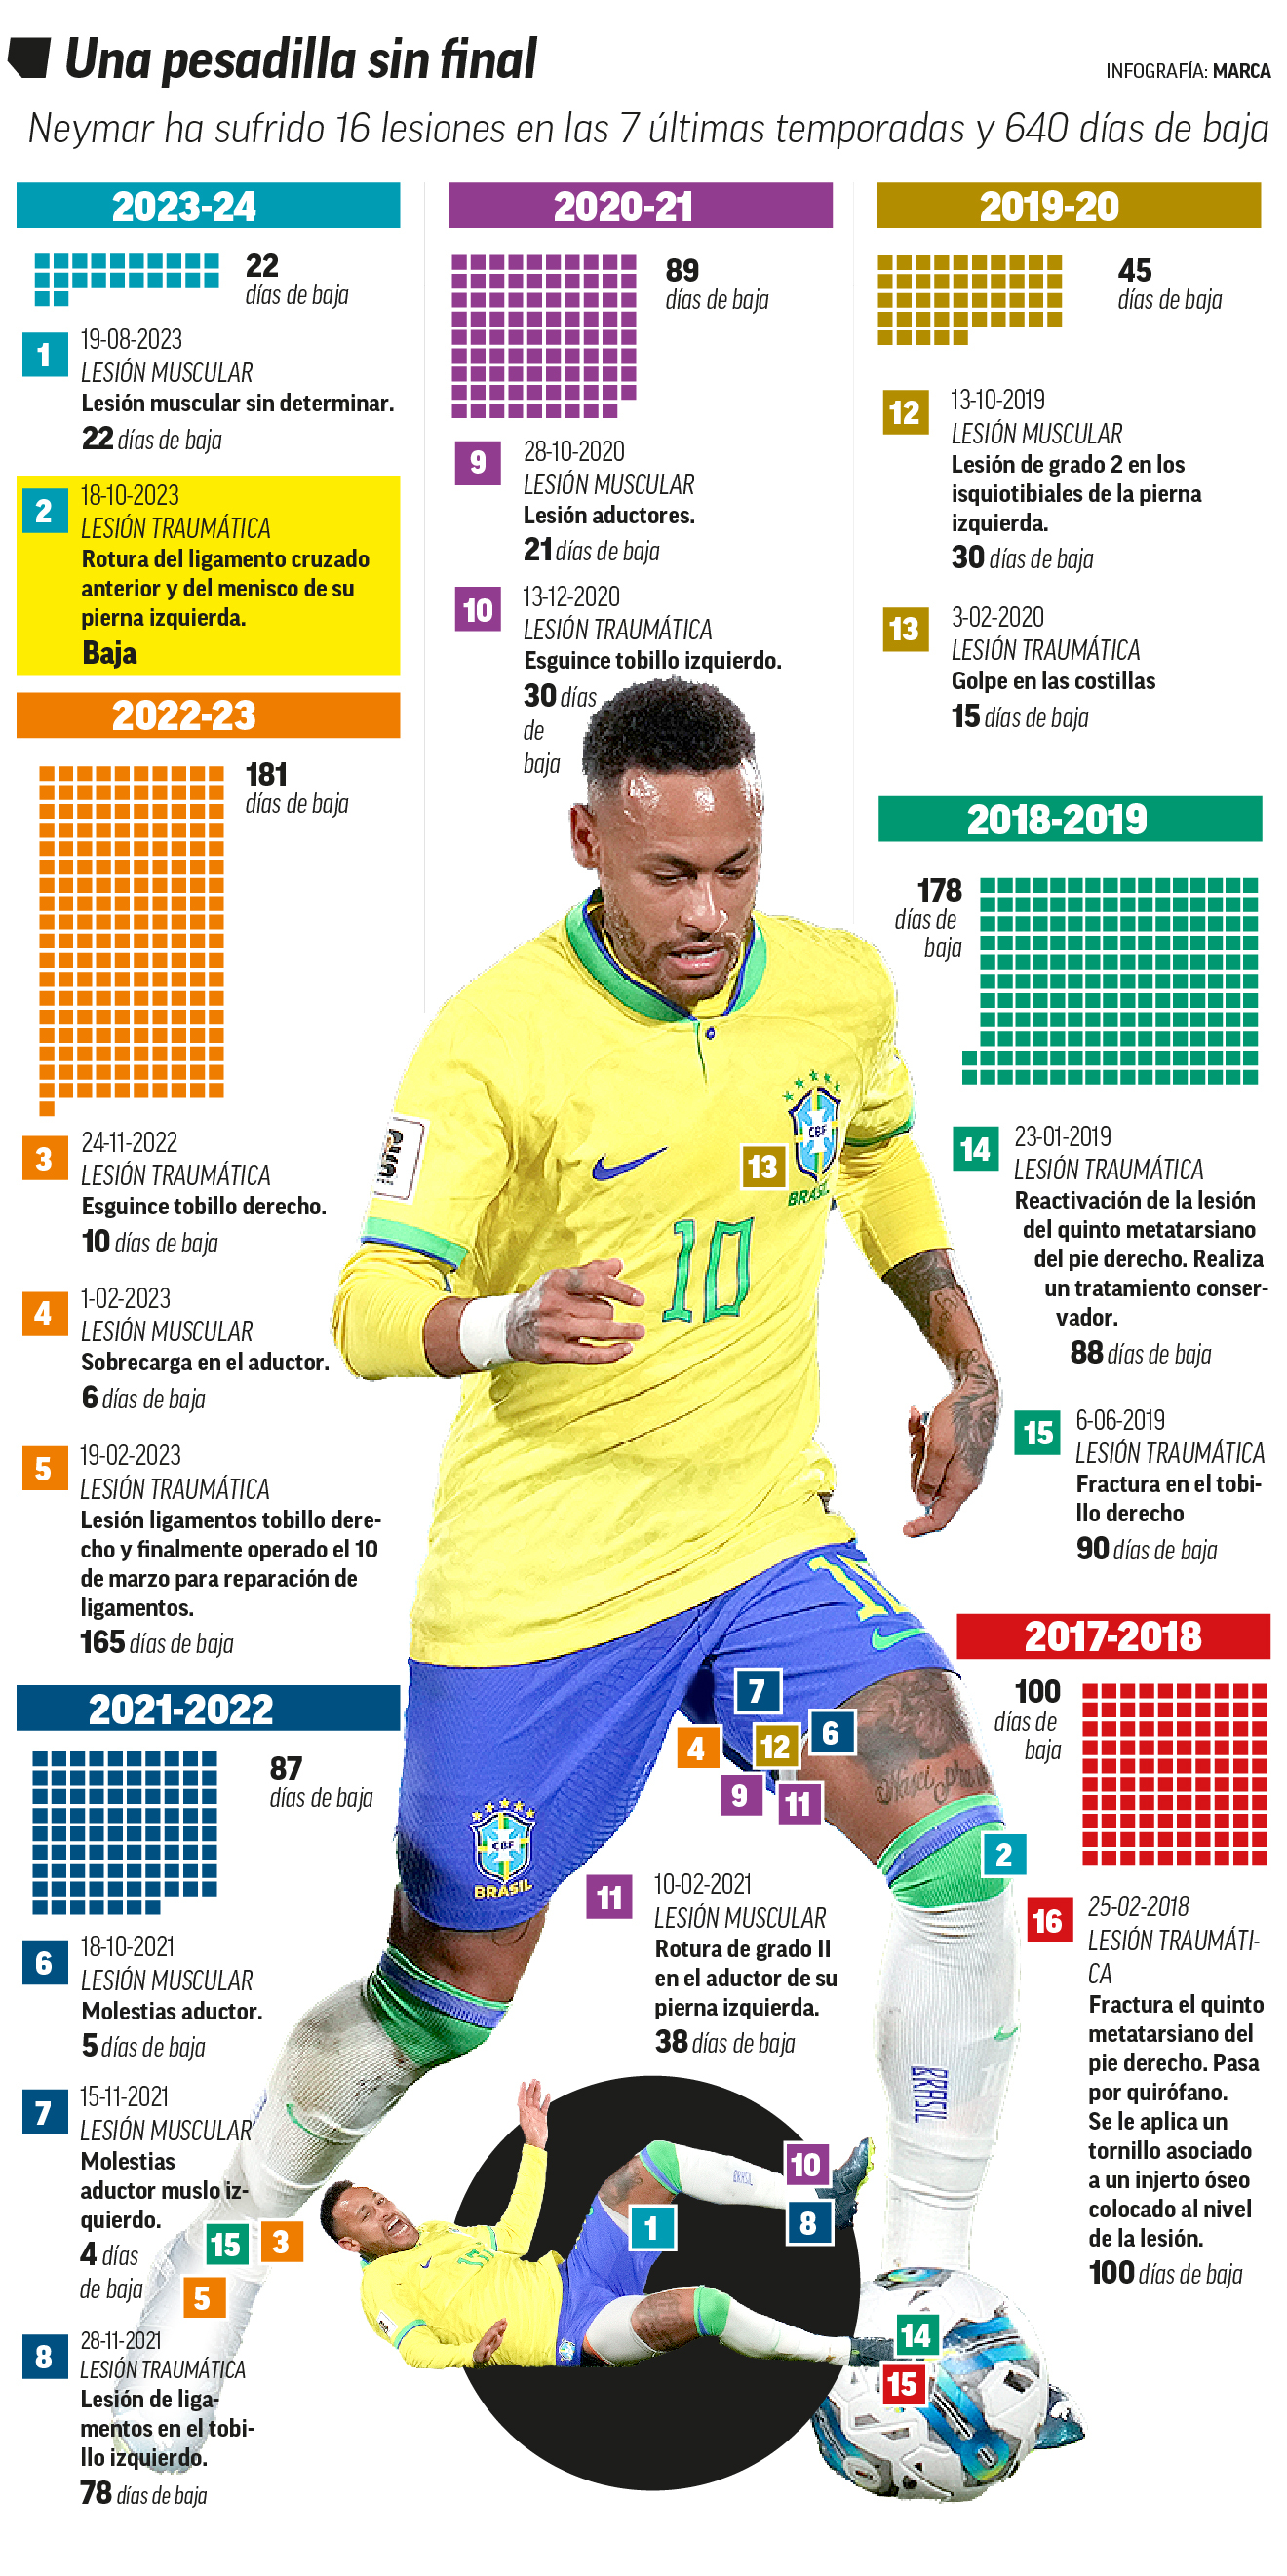 Neymar reconoce que su grave lesin de rodilla es su "peor" momento